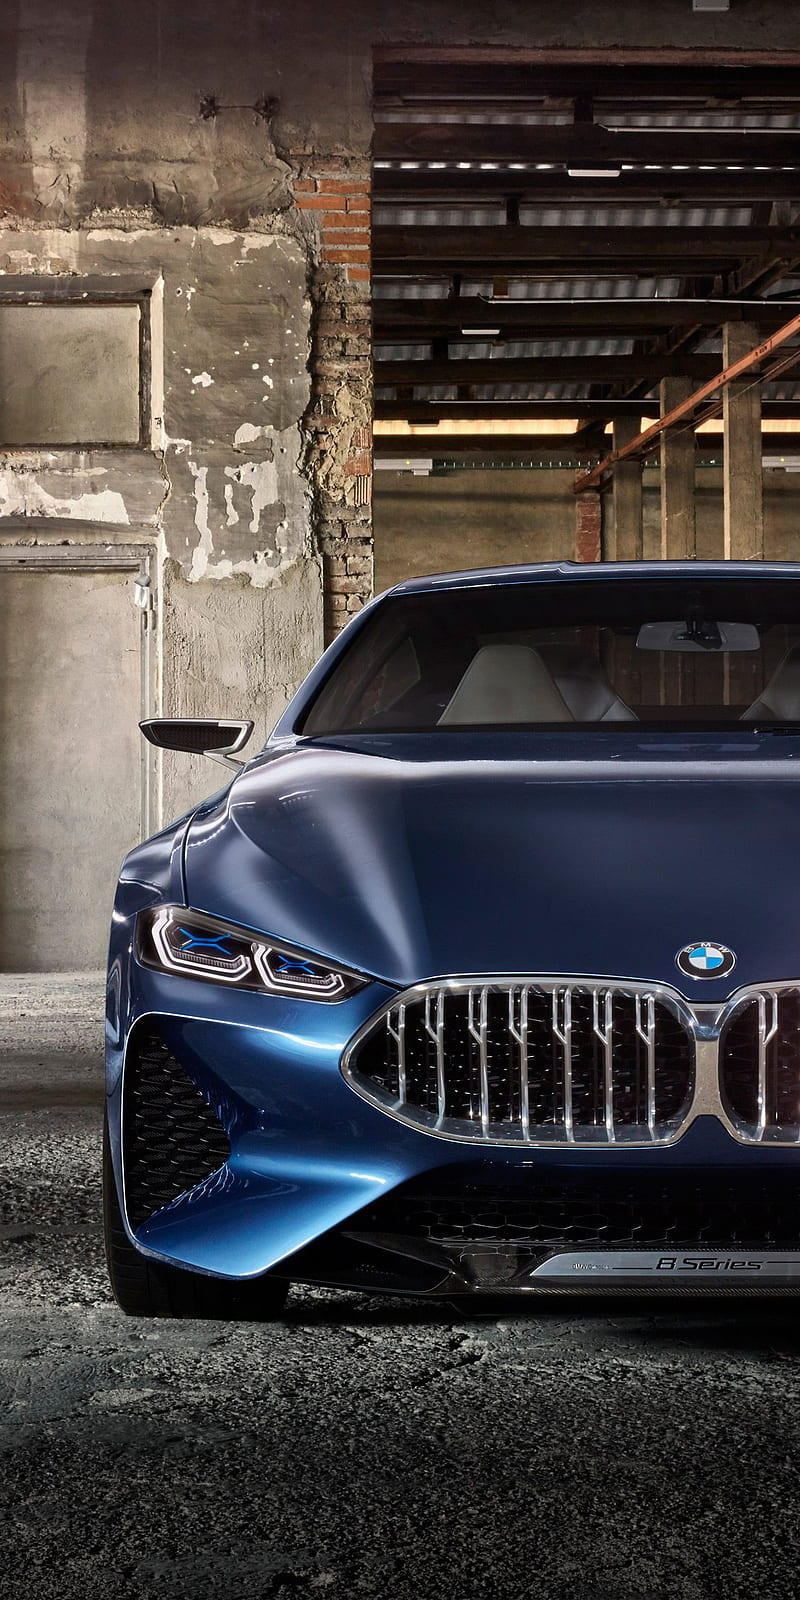 BMW 8 Series - sản phẩm cao cấp của BMW, được thiết kế đậm chất thể thao và sang trọng. Hình ảnh về dòng xe này sẽ đem lại cho bạn cái nhìn toàn diện về ngoại hình, hiệu suất và trang bị tiện nghi.